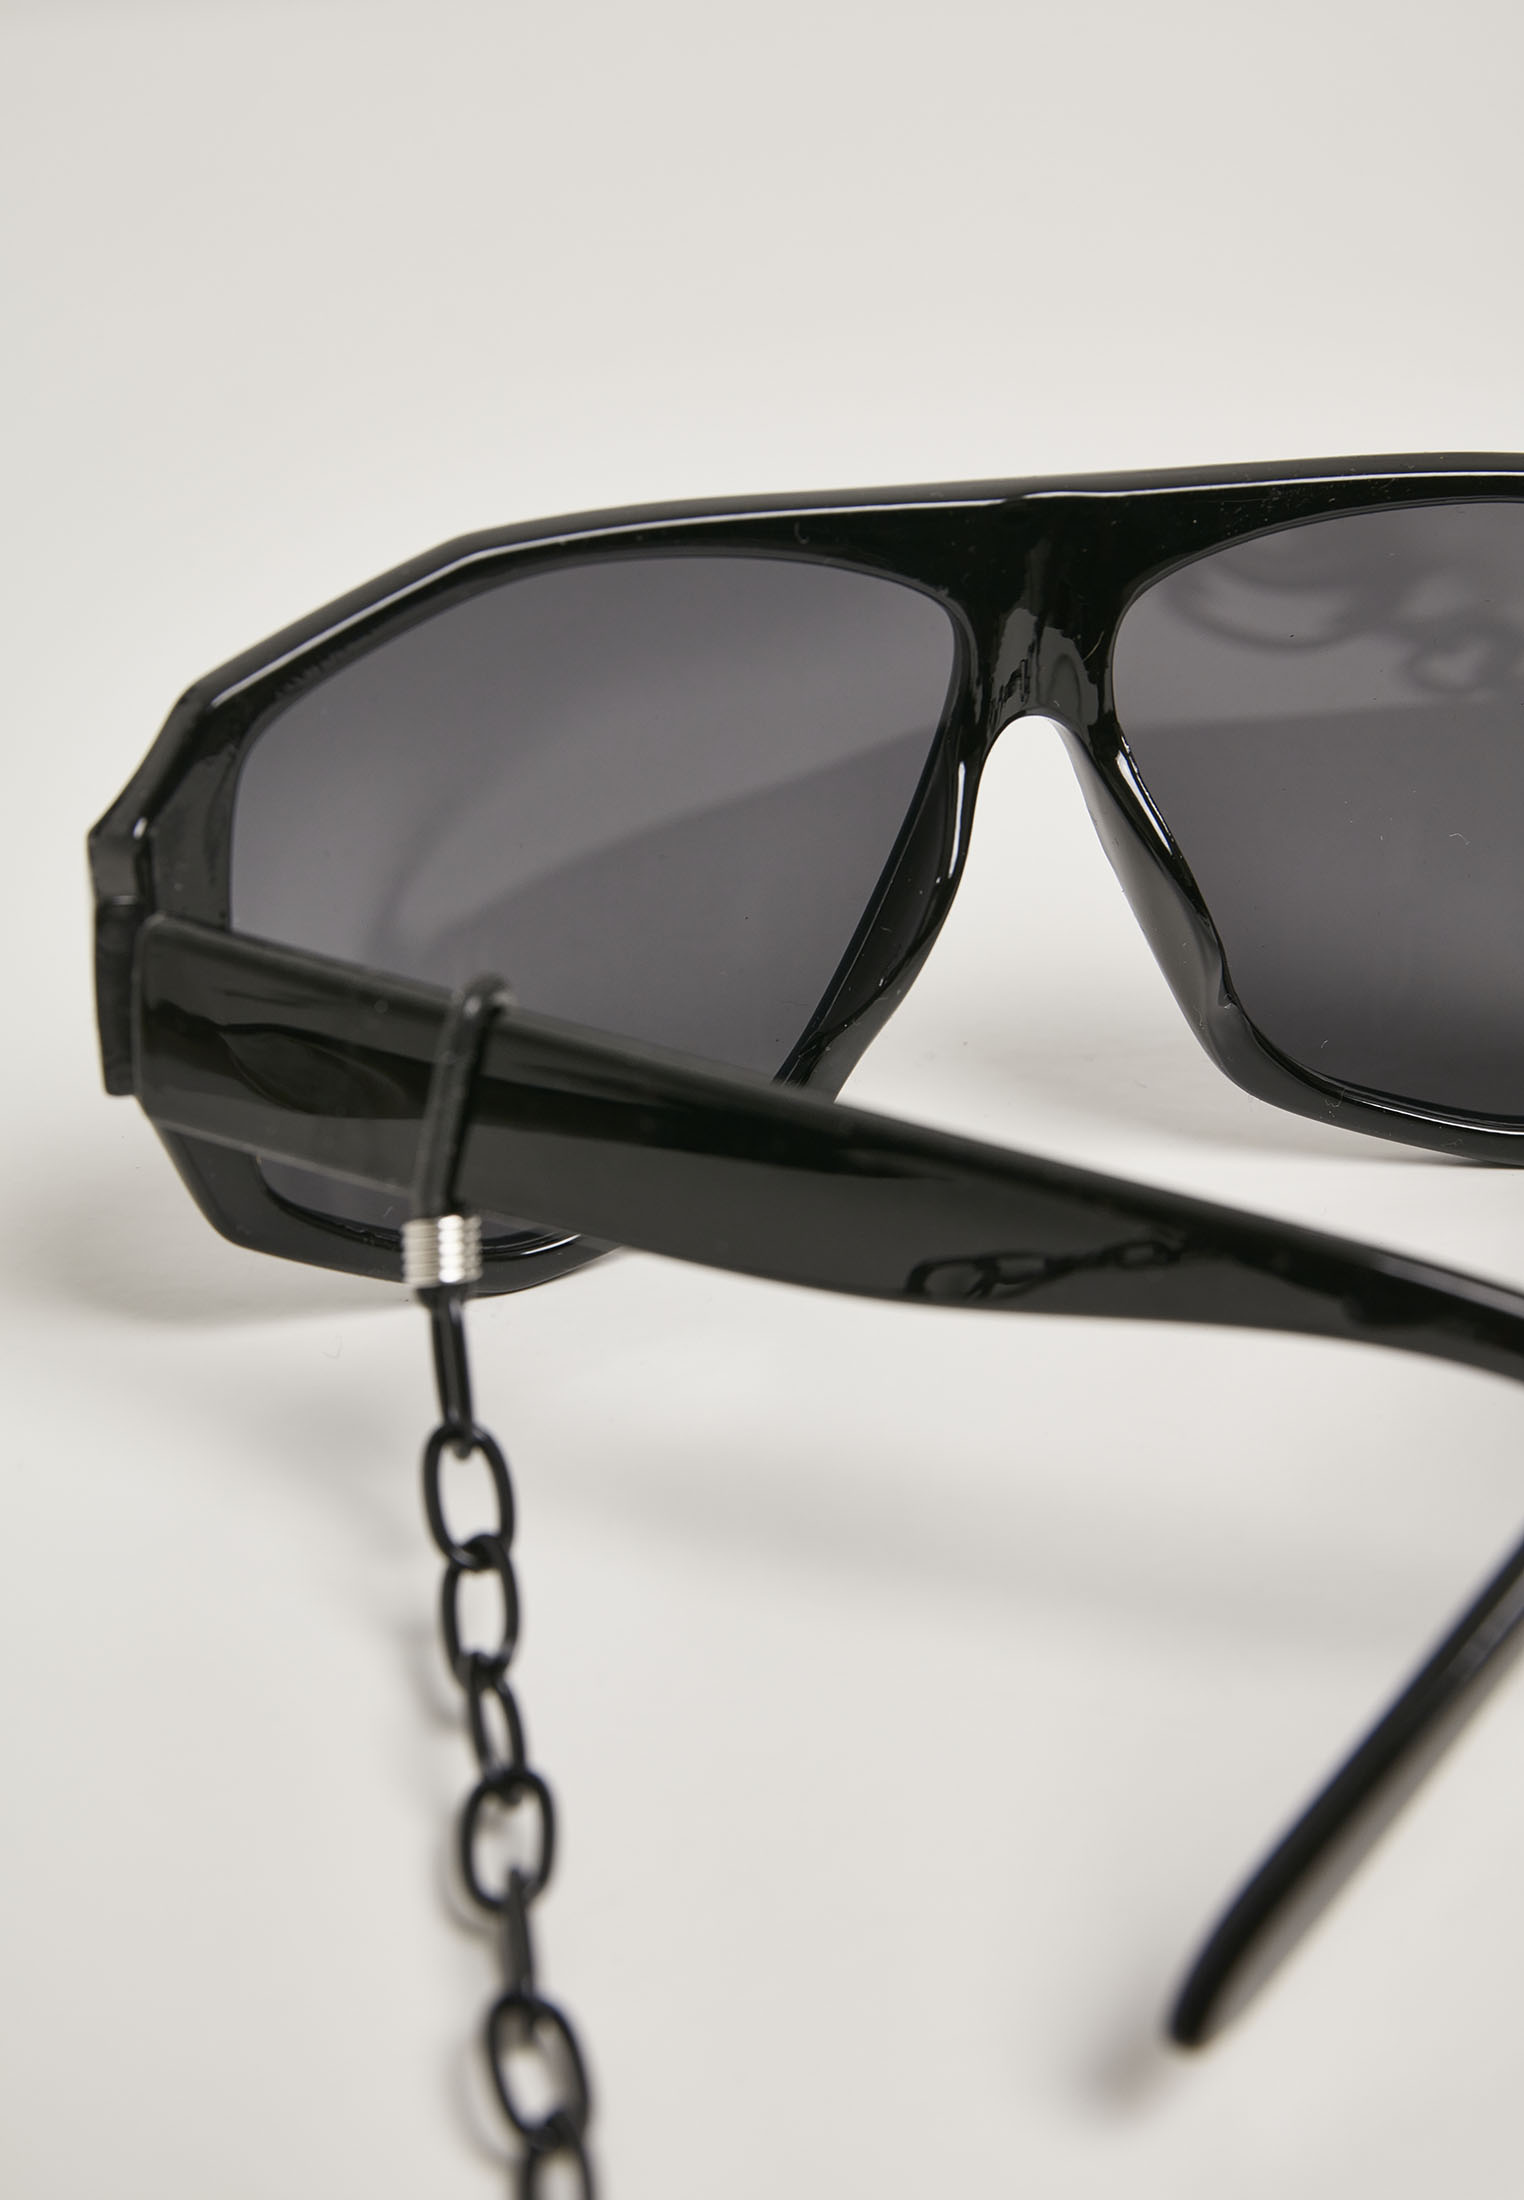 Sonnenbrillen 101 Chain Sunglasses in Farbe black/black